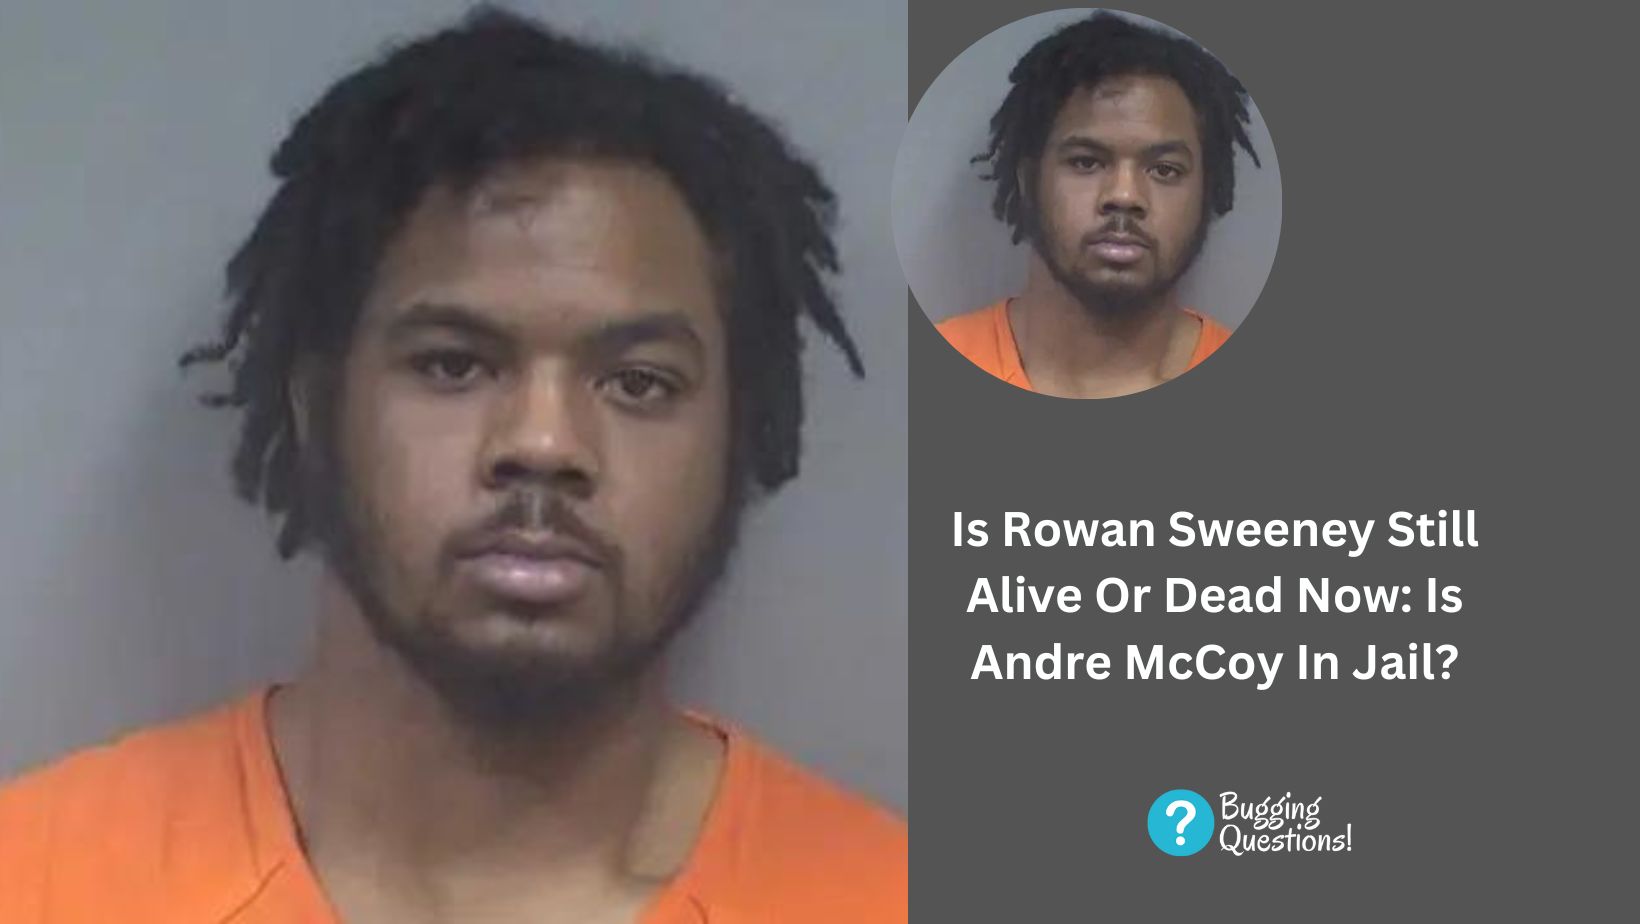 Is Rowan Sweeney Still Alive Or Dead Now: Is Andre McCoy In Jail?